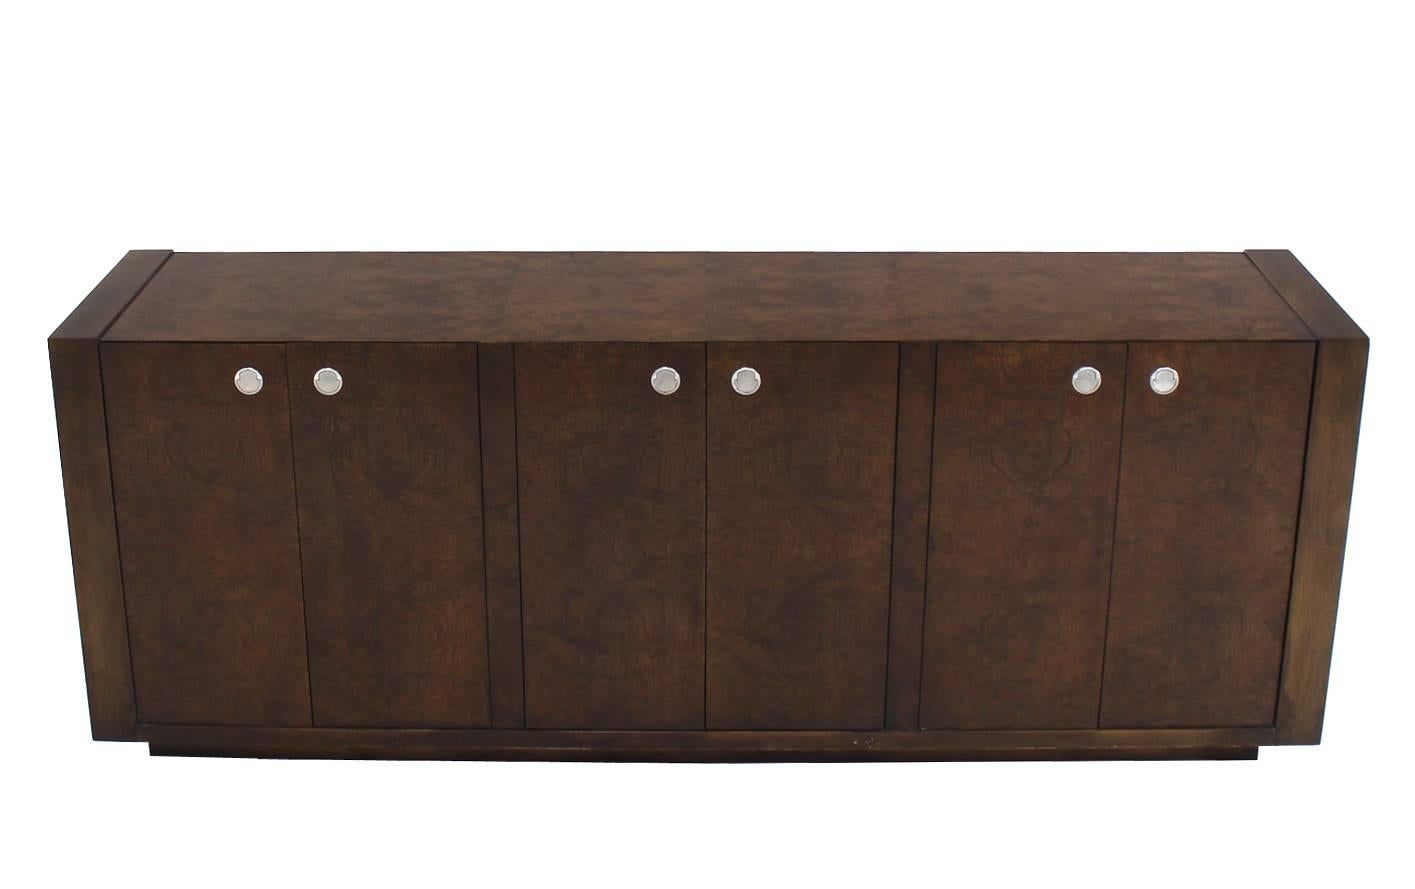 Very nice large dark burlwood dresser made for Bloomingdales.